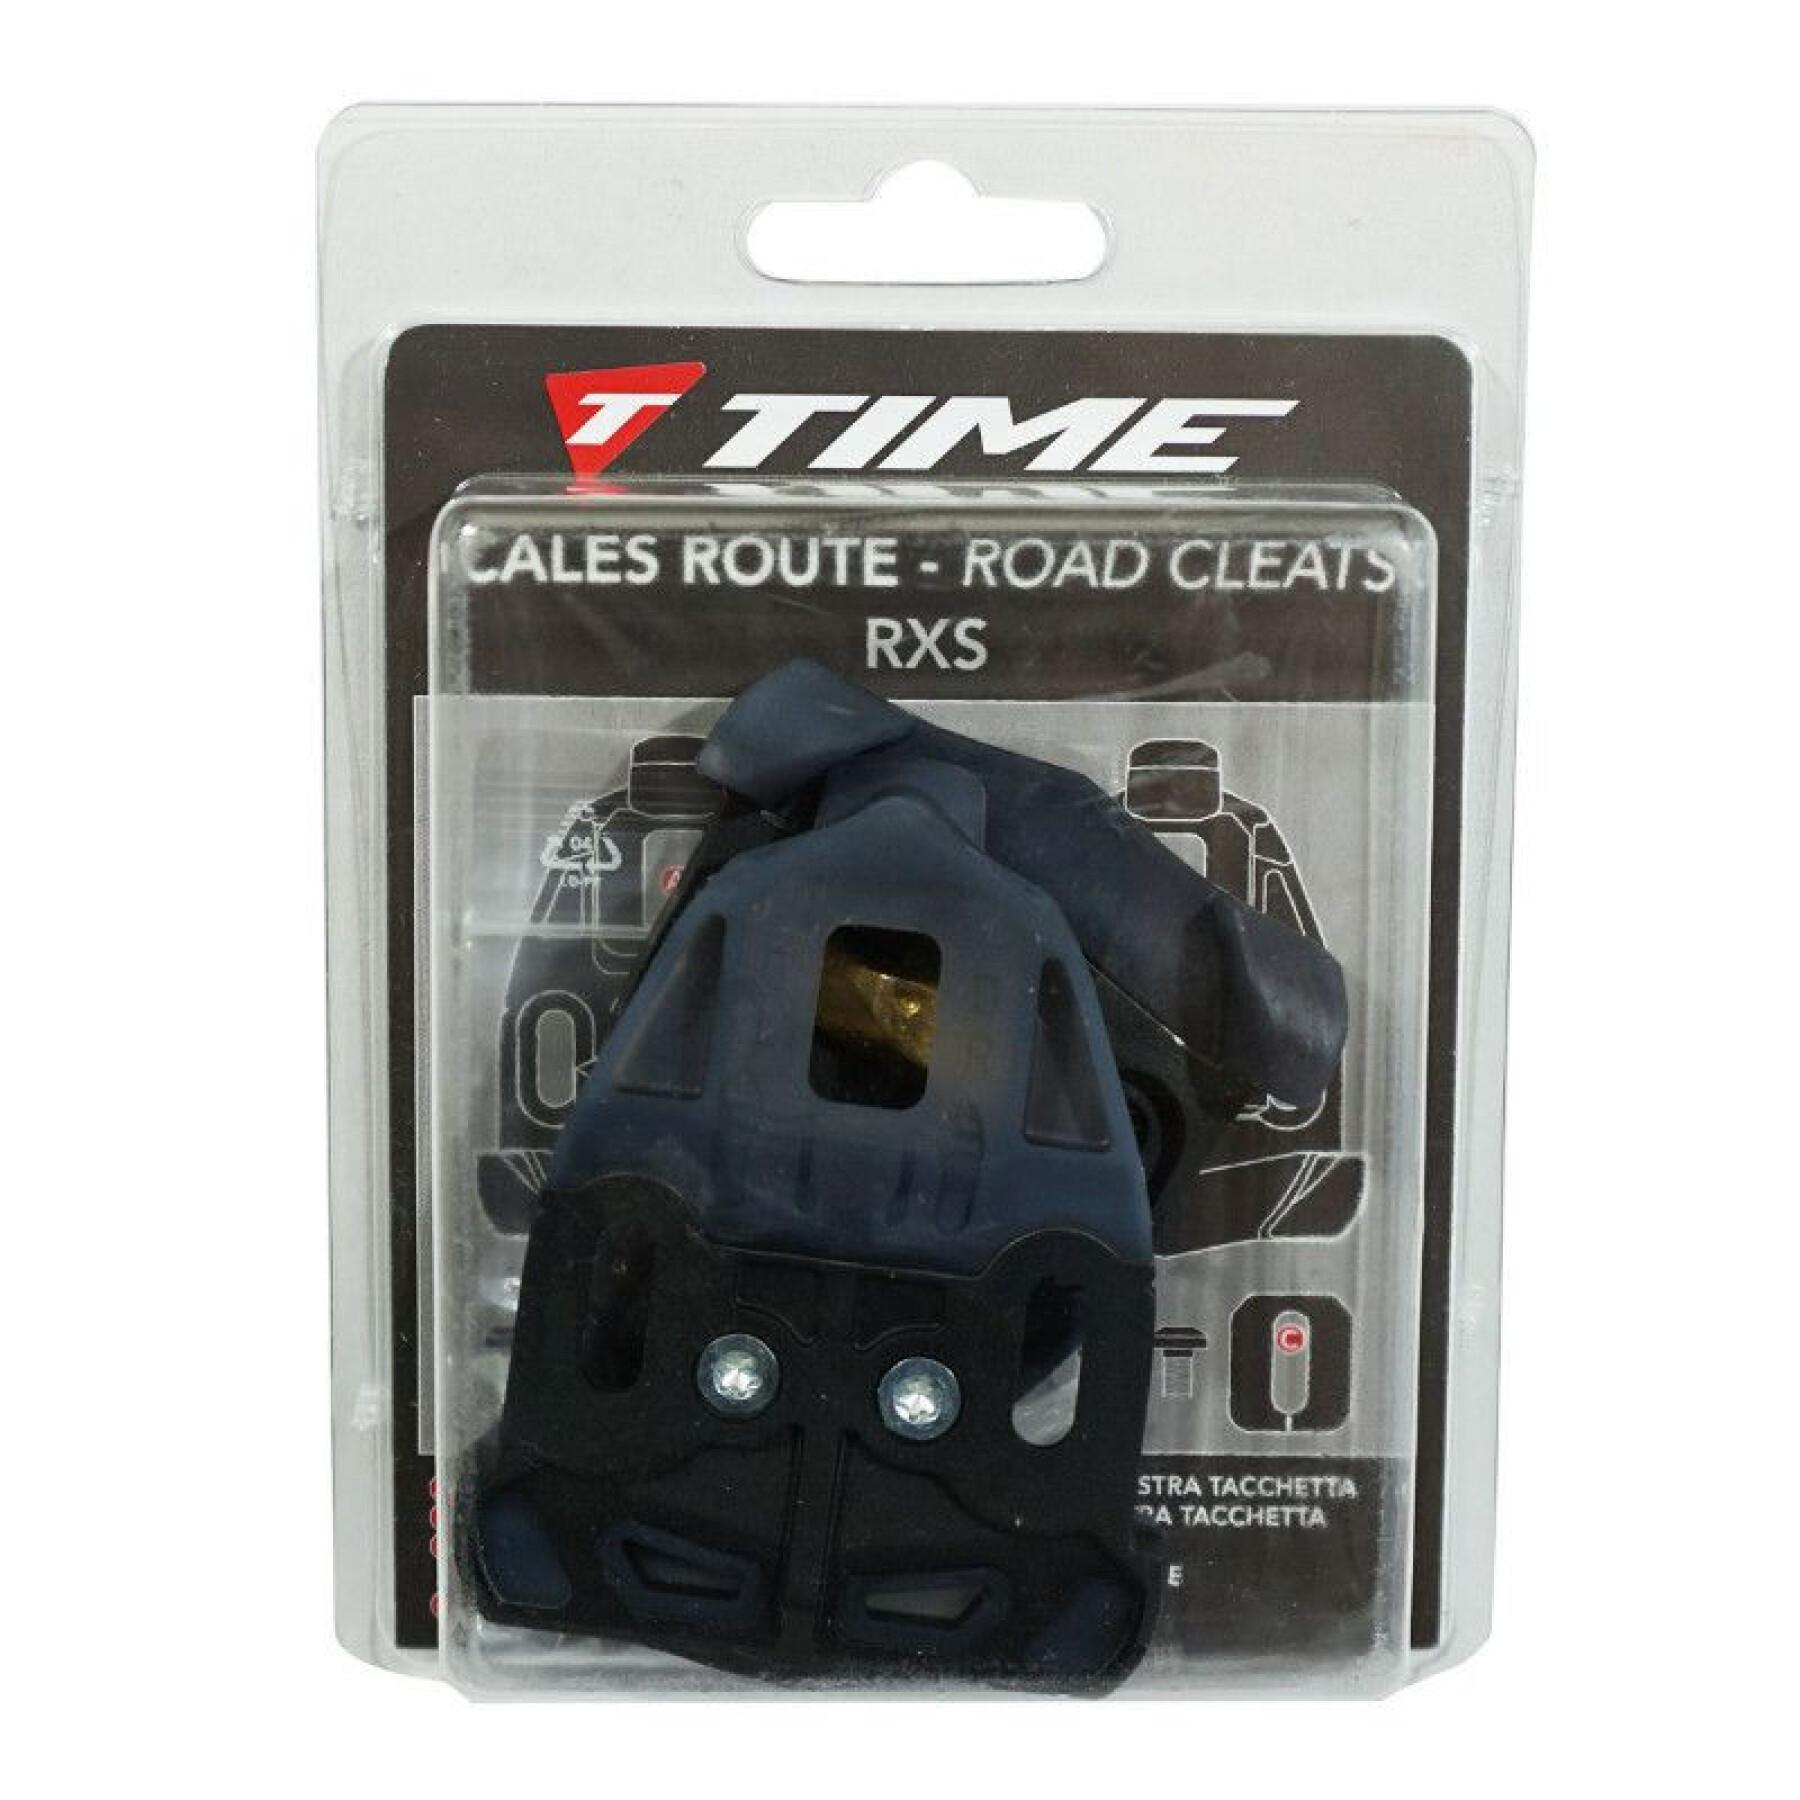 Coppia di tacchette per pedali TIME RXS-RXE